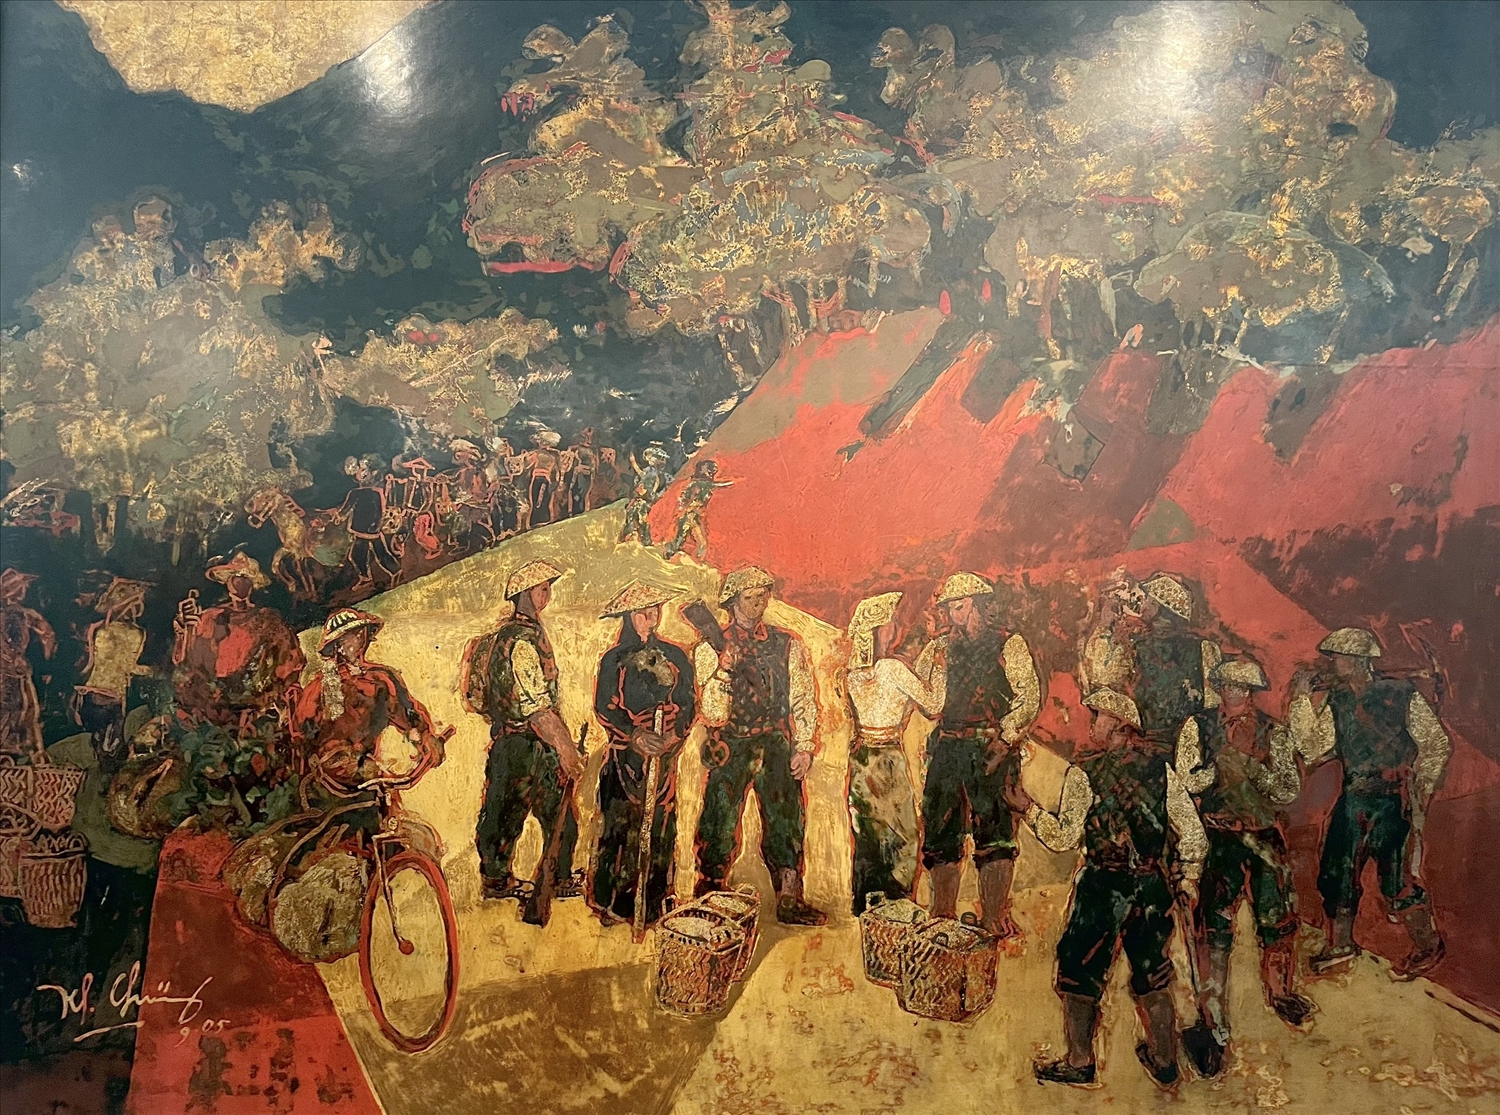 Tác phẩm "Đường lên Điện Biên" trên chất liệu sơn mài của họa sĩ Trần Khánh Chương.